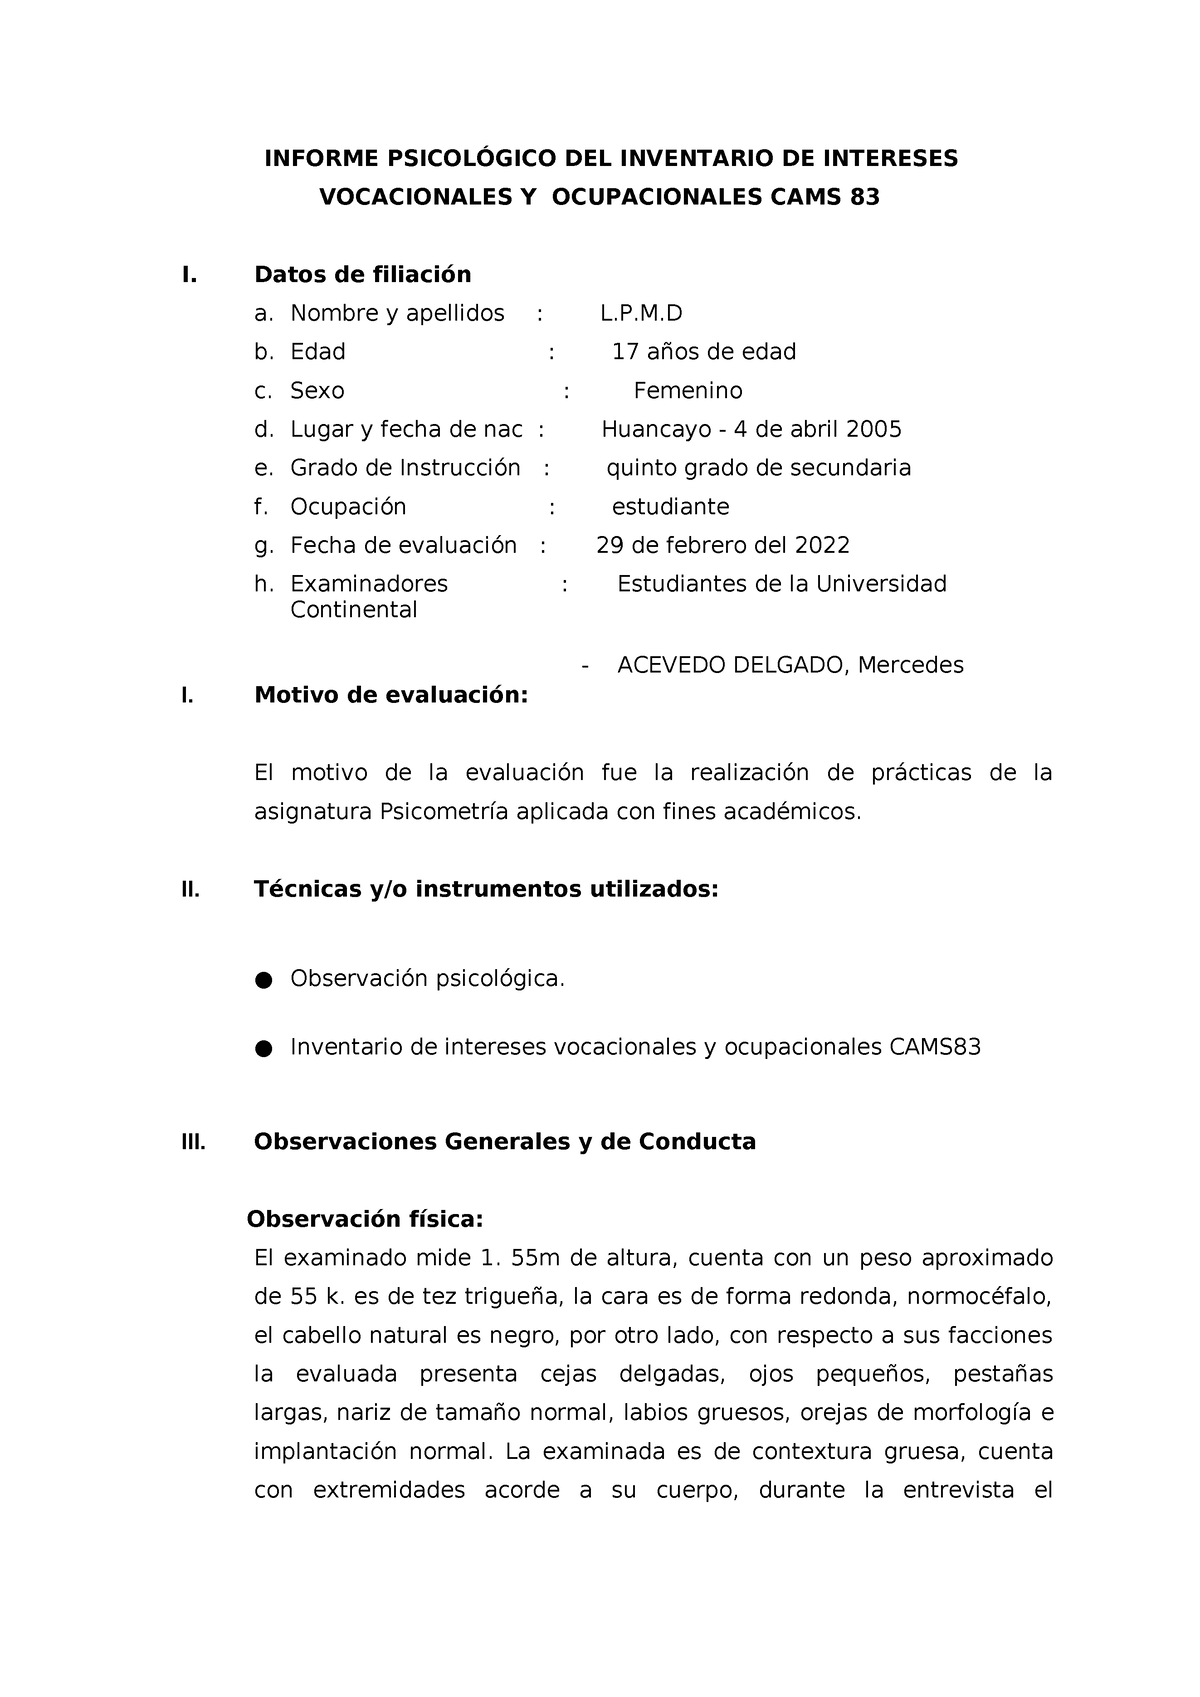 Informe Cams 83 Informe PsicolÓgico Del Inventario De Intereses Vocacionales Y Ocupacionales 8863